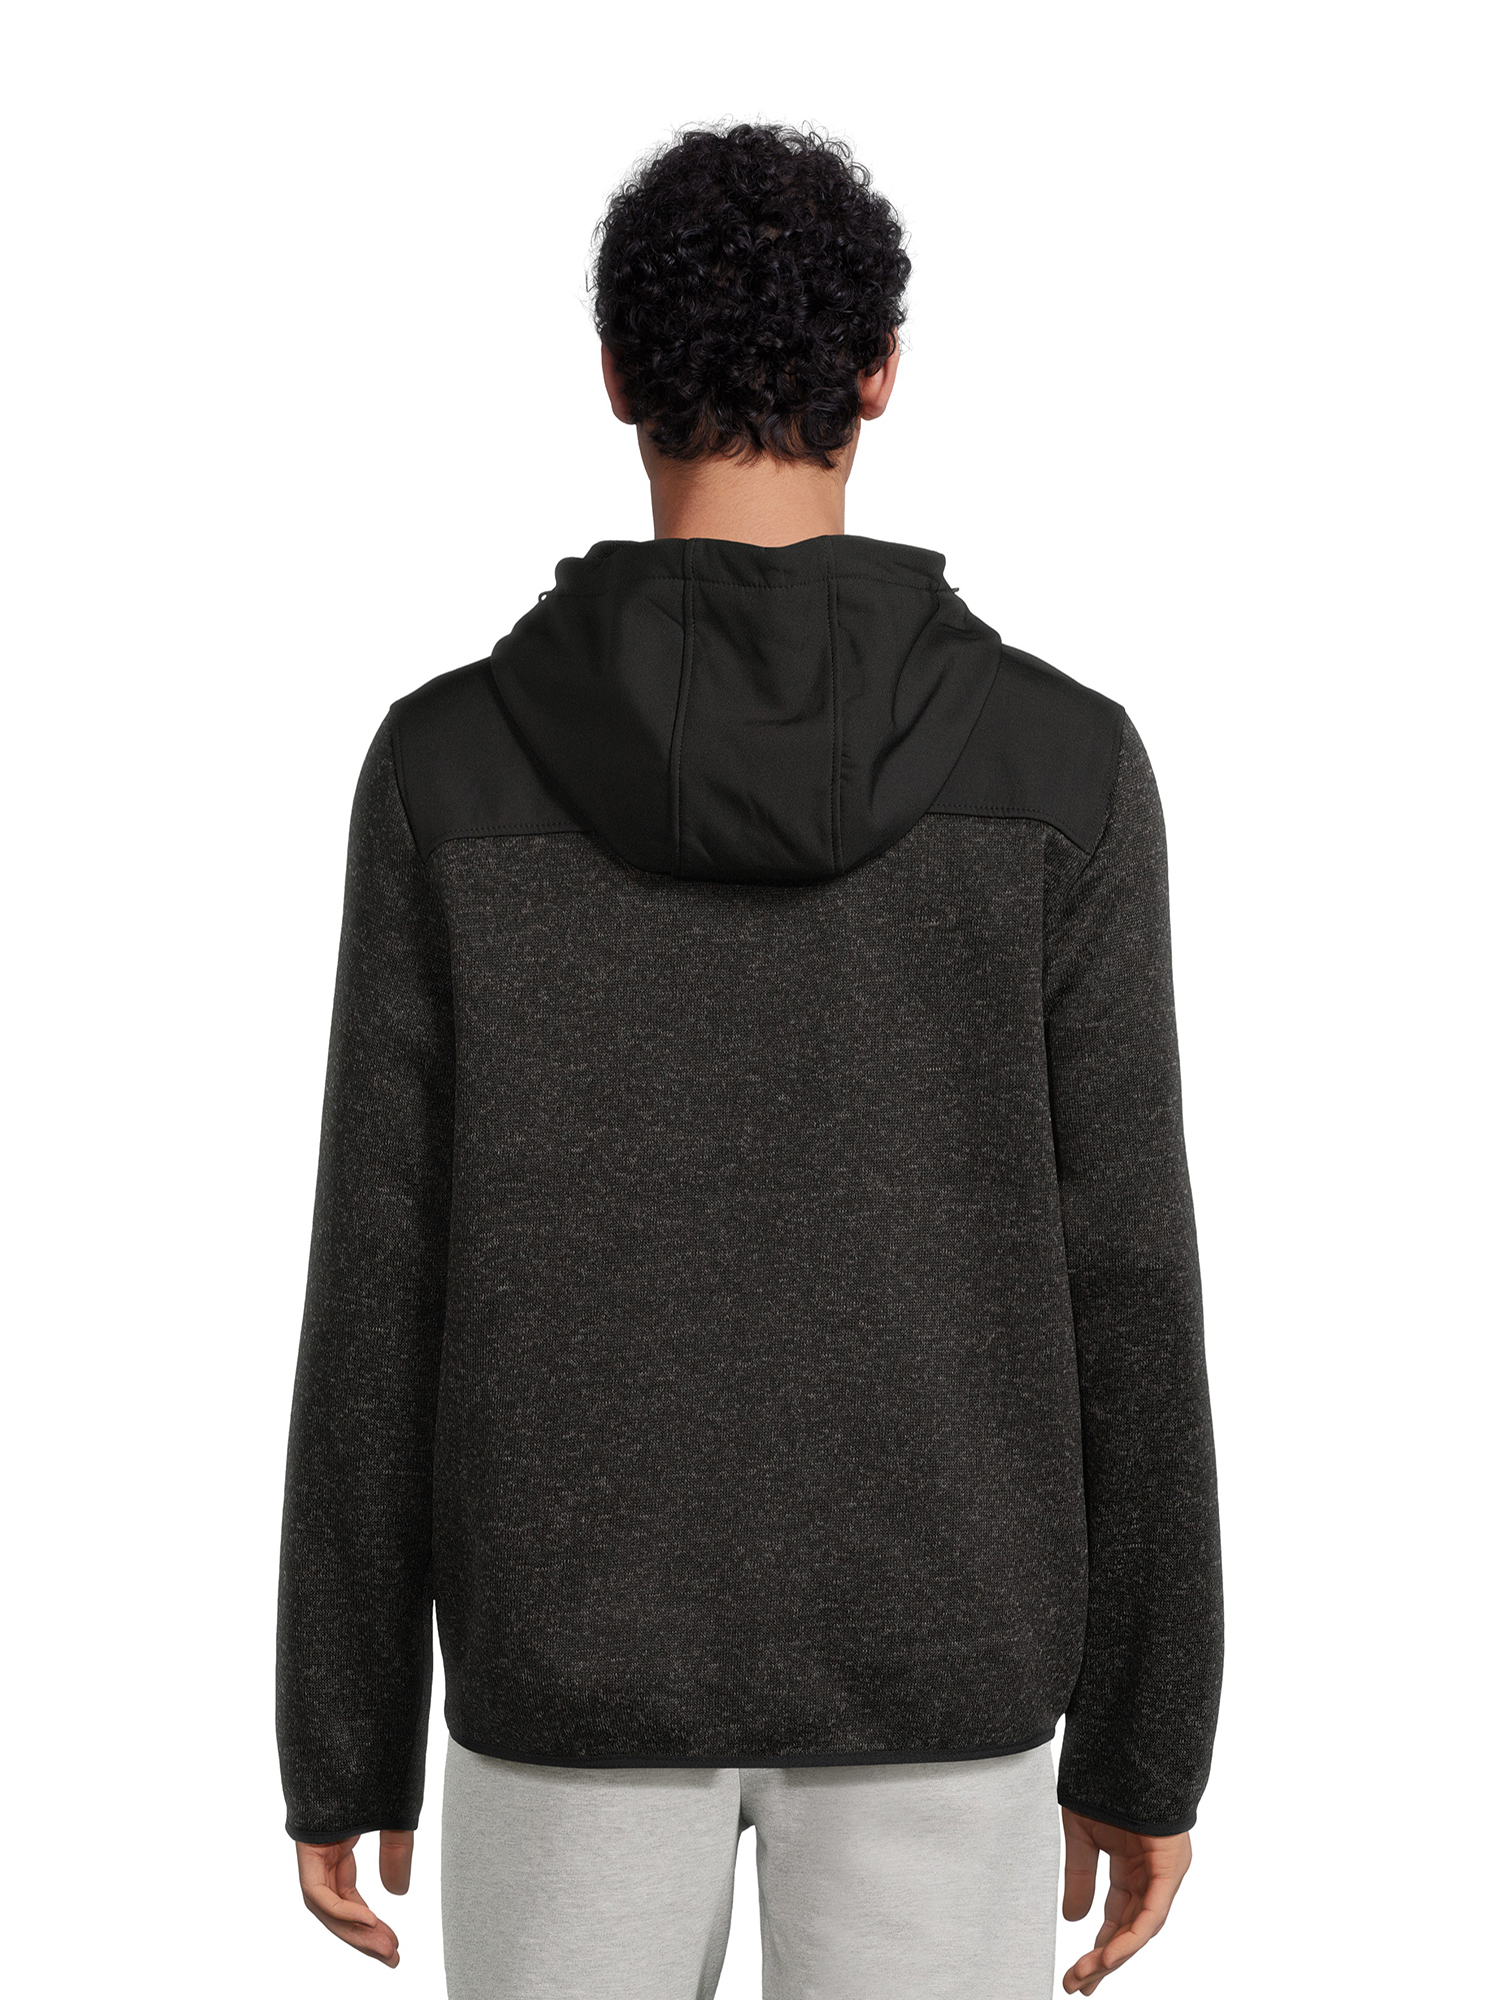 Reebok Men’s Hooded Sweater Fleece Jacket, Sizes M-2XL - image 3 of 5